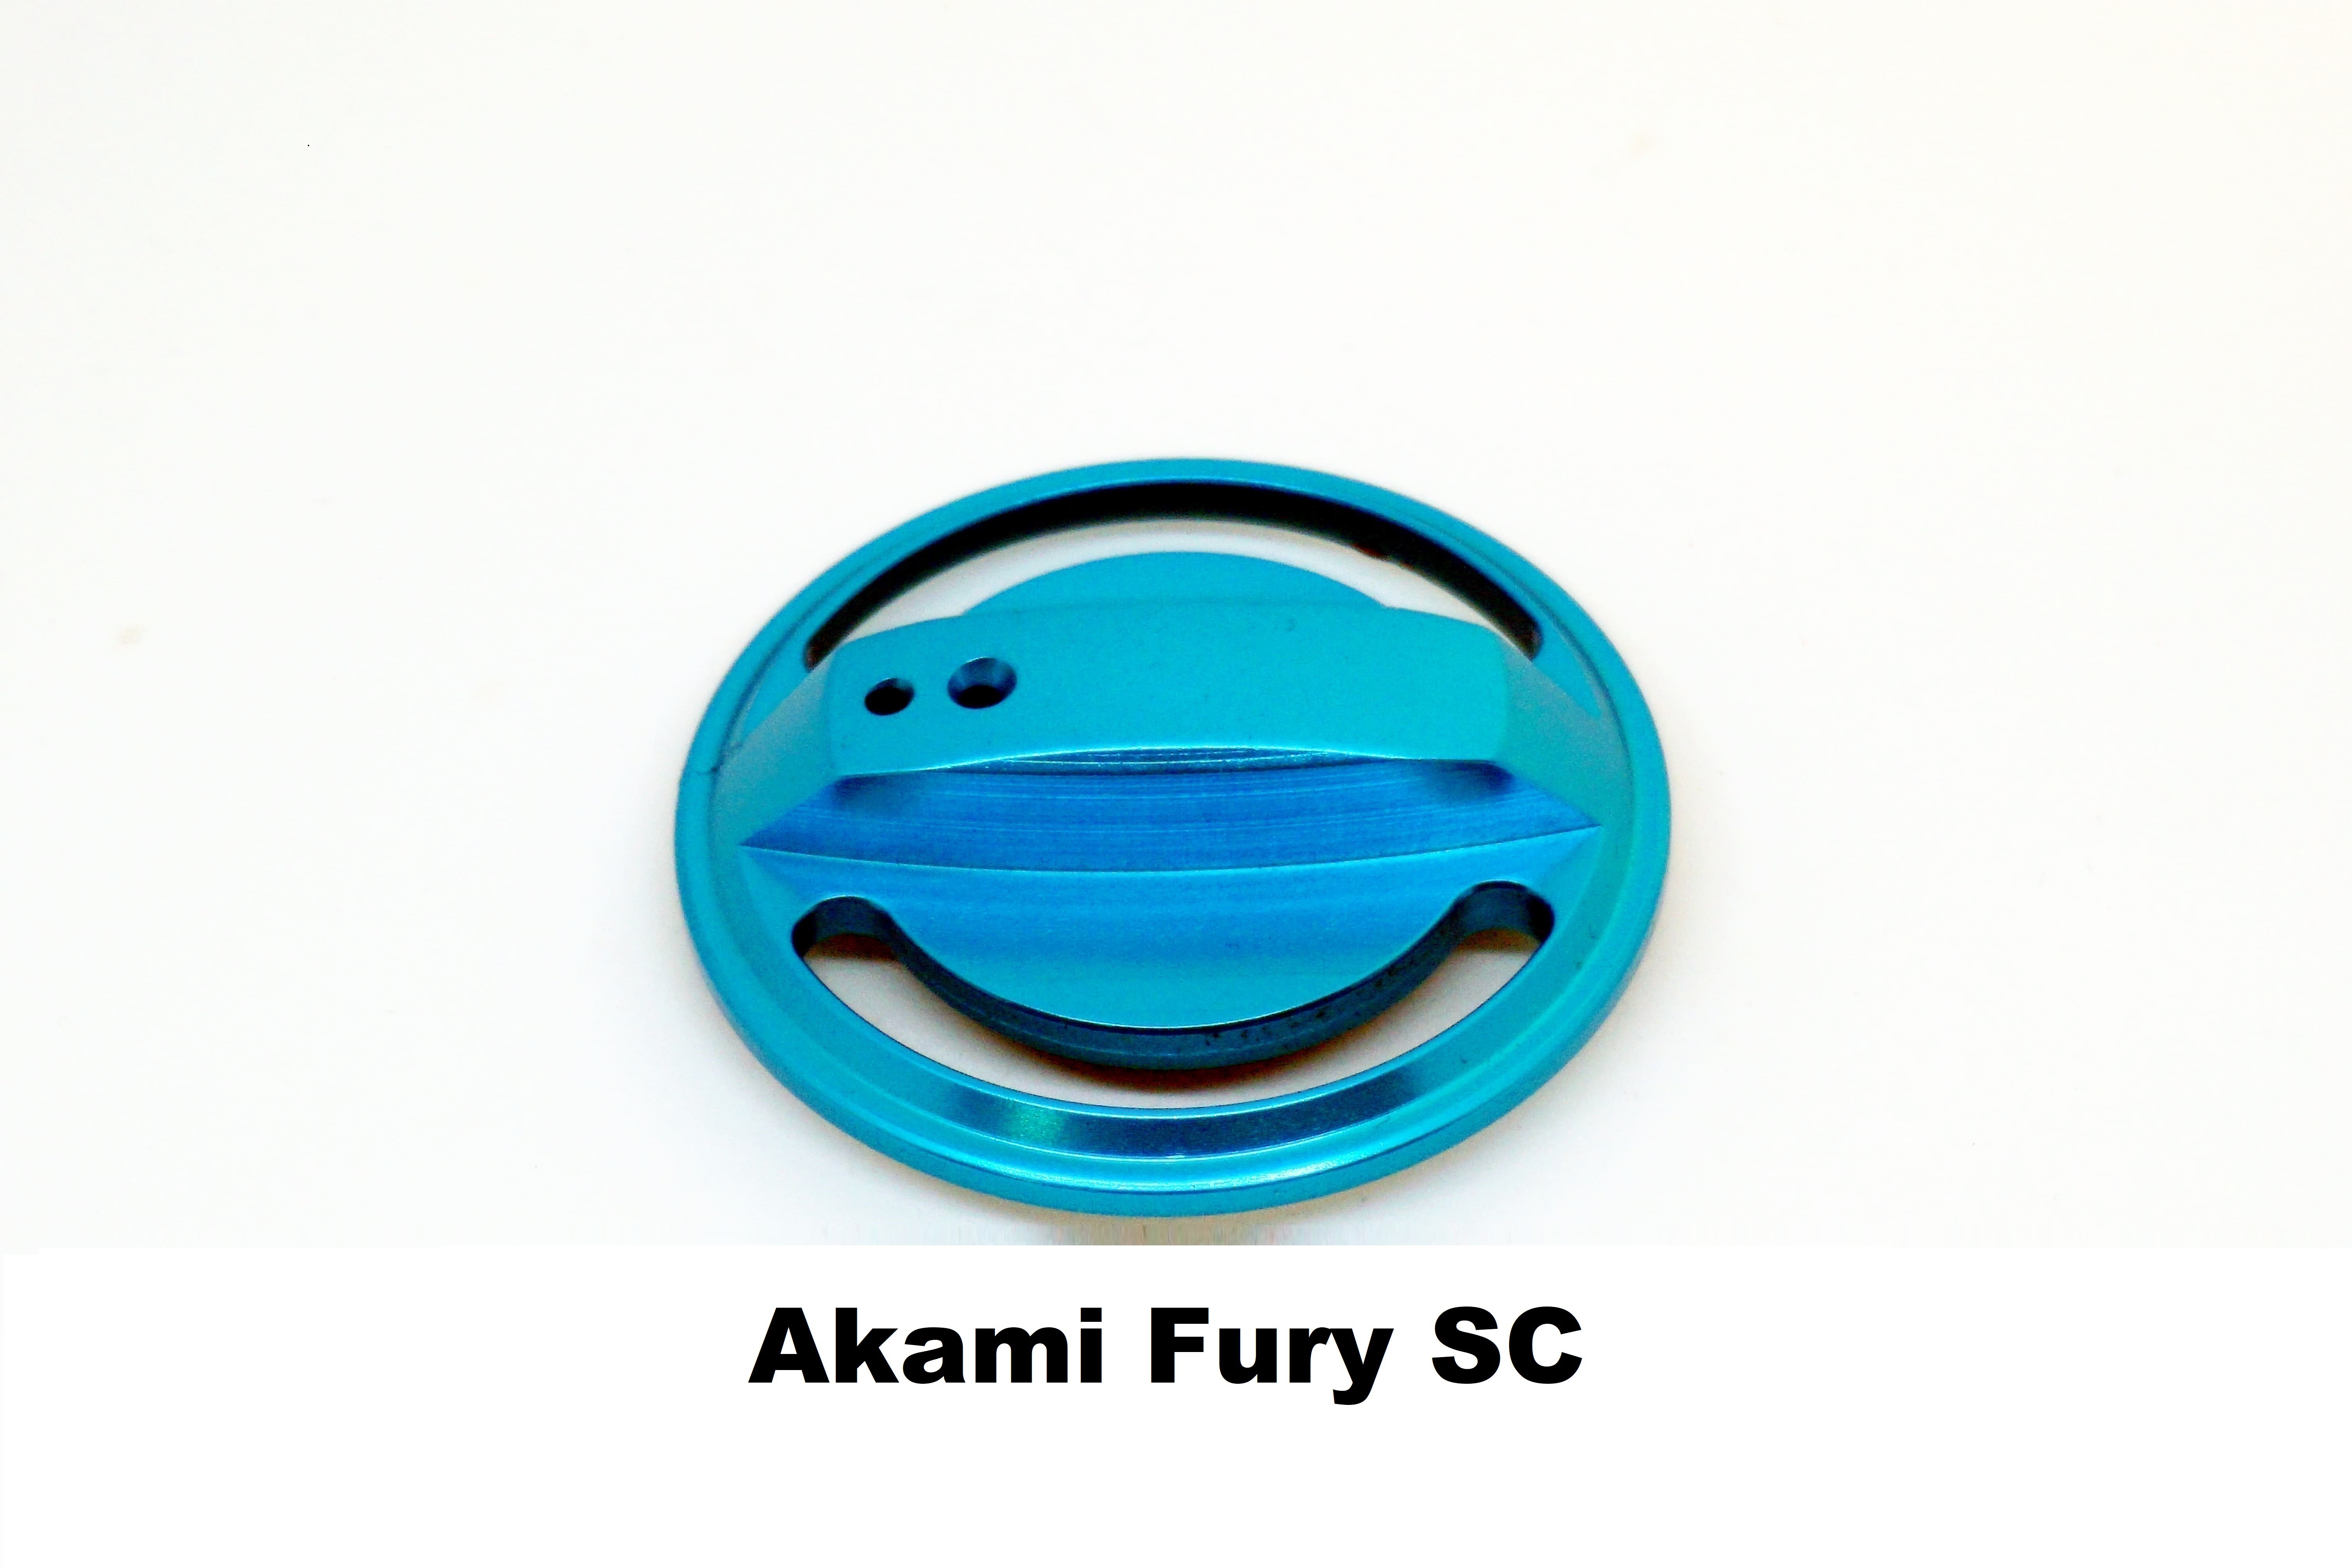 Bouchon de Fren Akami Fury SC